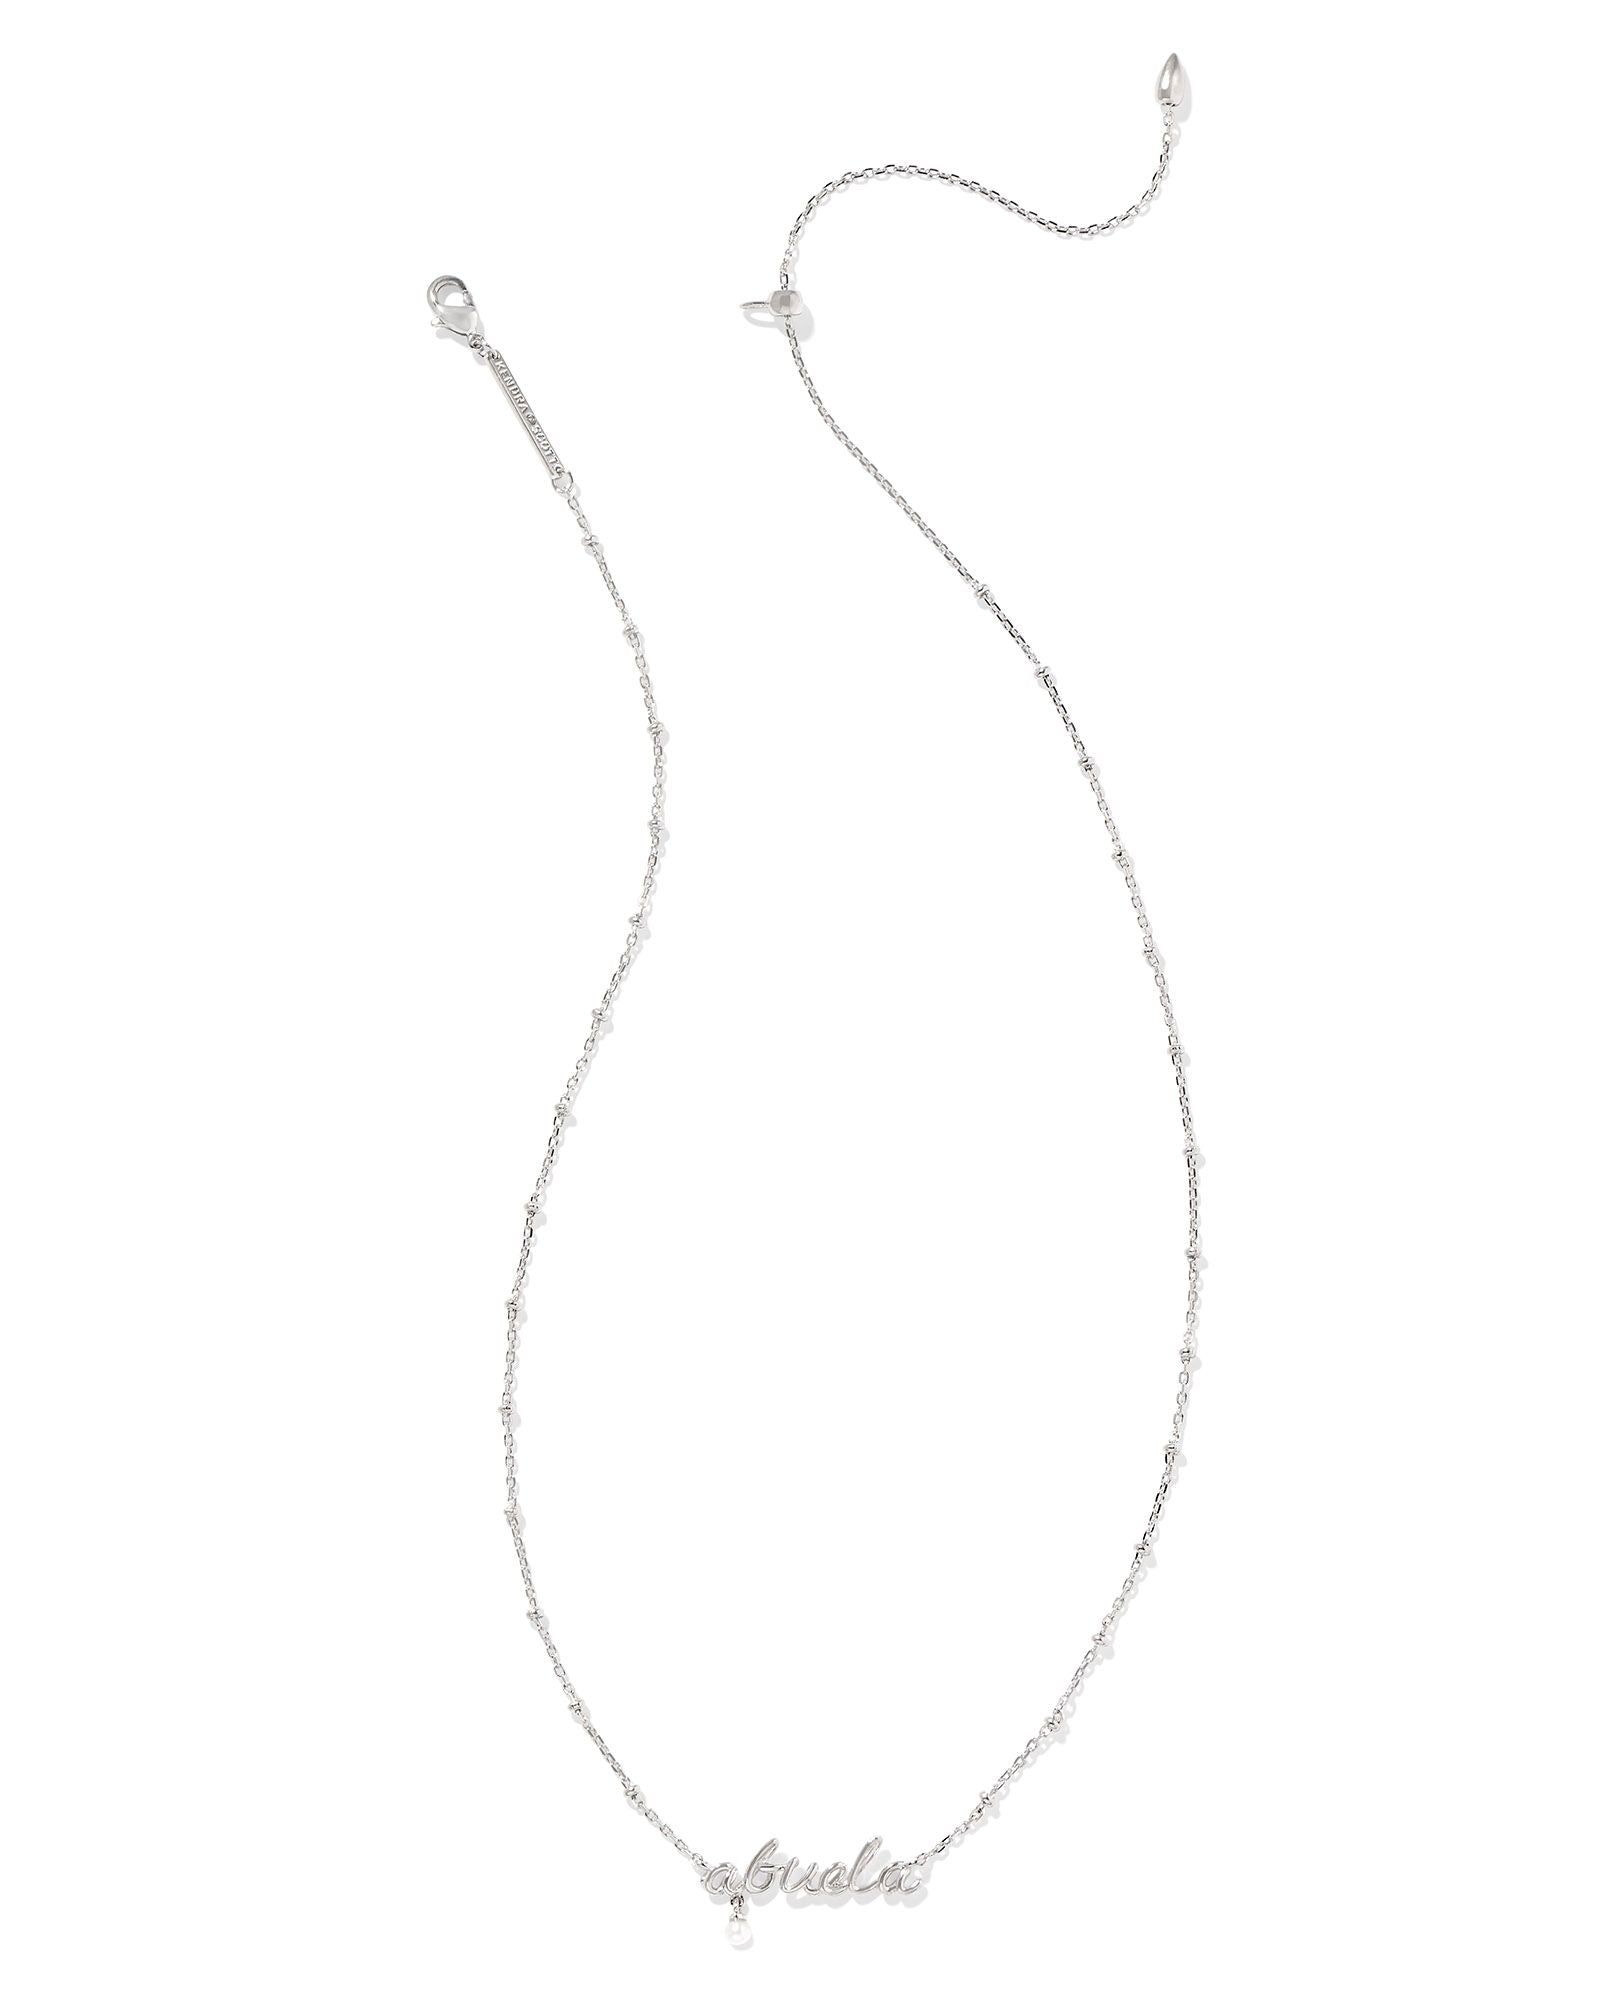 Abuela Script Pendant Necklace Silver w/White Pearl